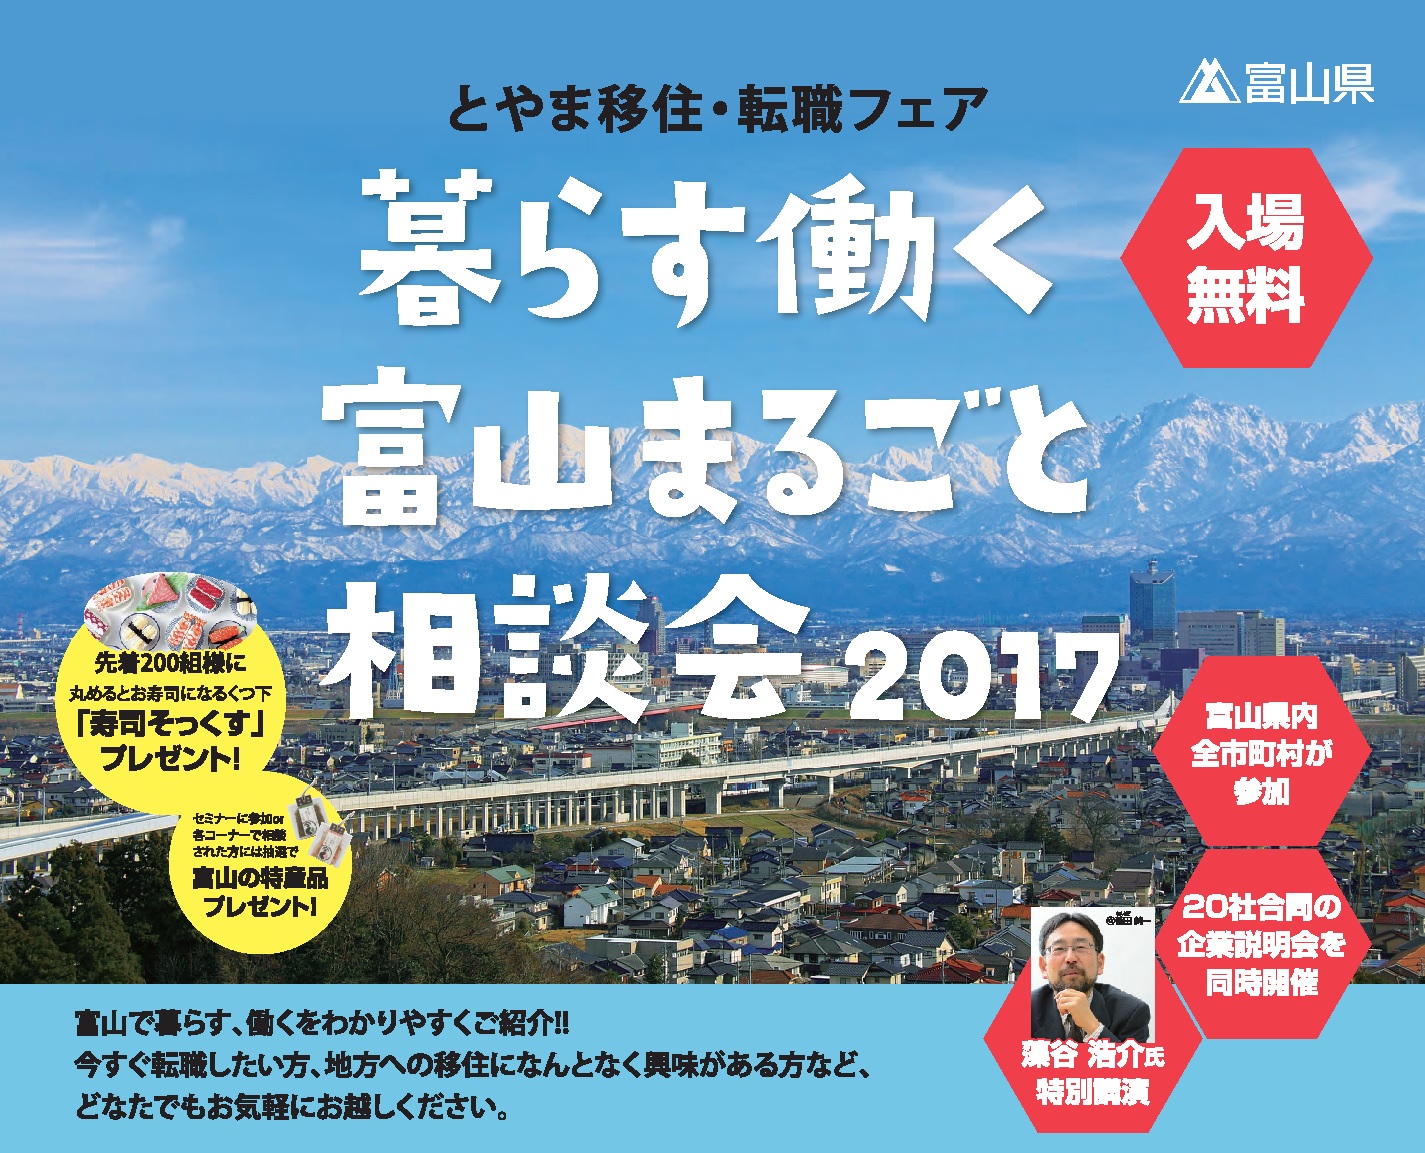 暮らす働く富山まるごと相談会2017 | 移住関連イベント情報